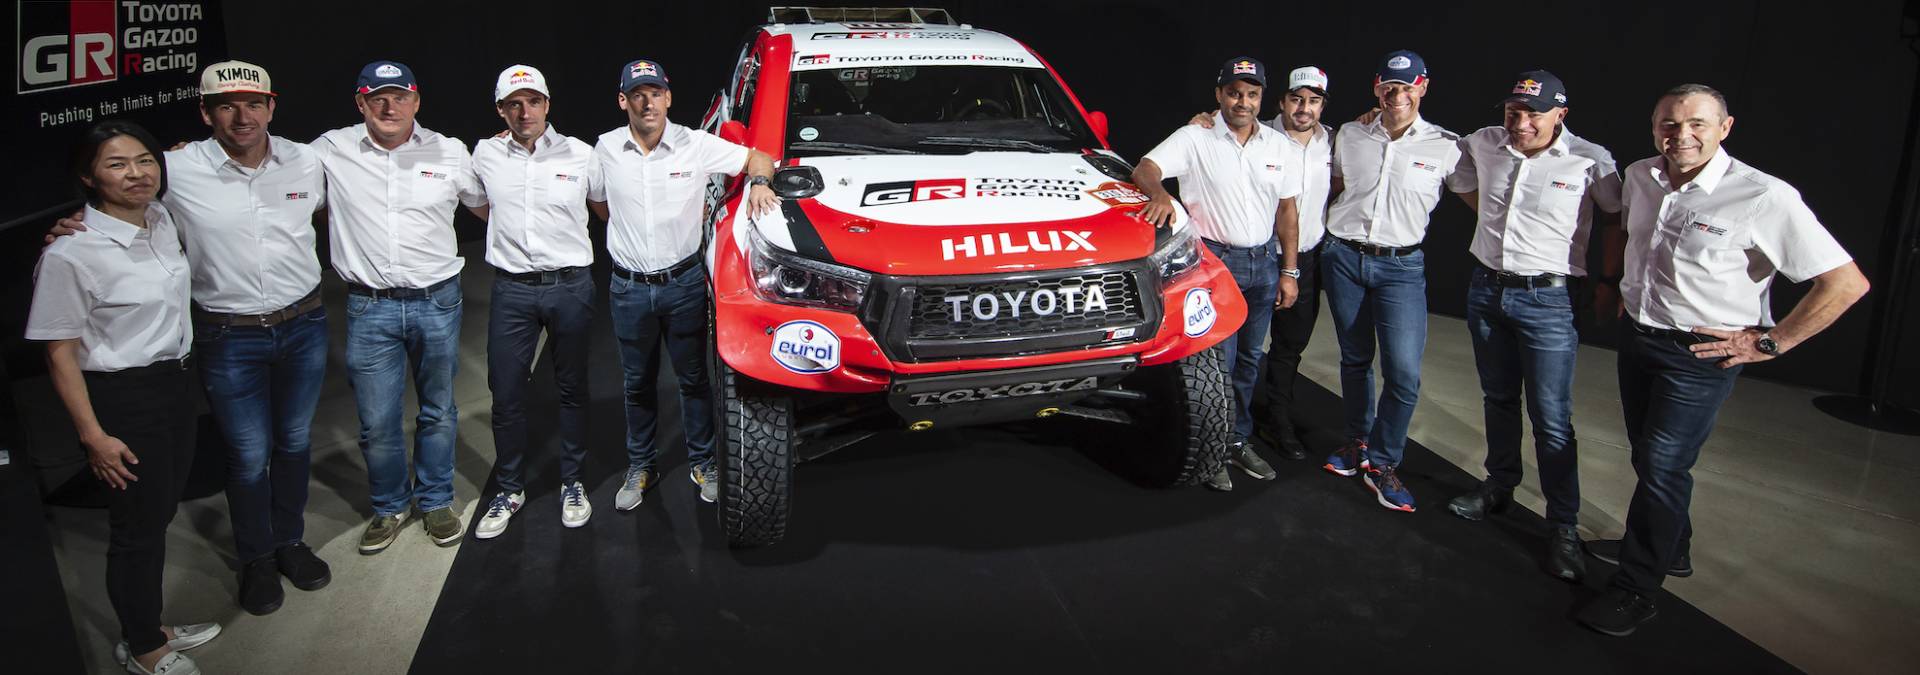 Fernando Alonso z Toyotą na Rajd Dakar 2020. Jest pełny skład